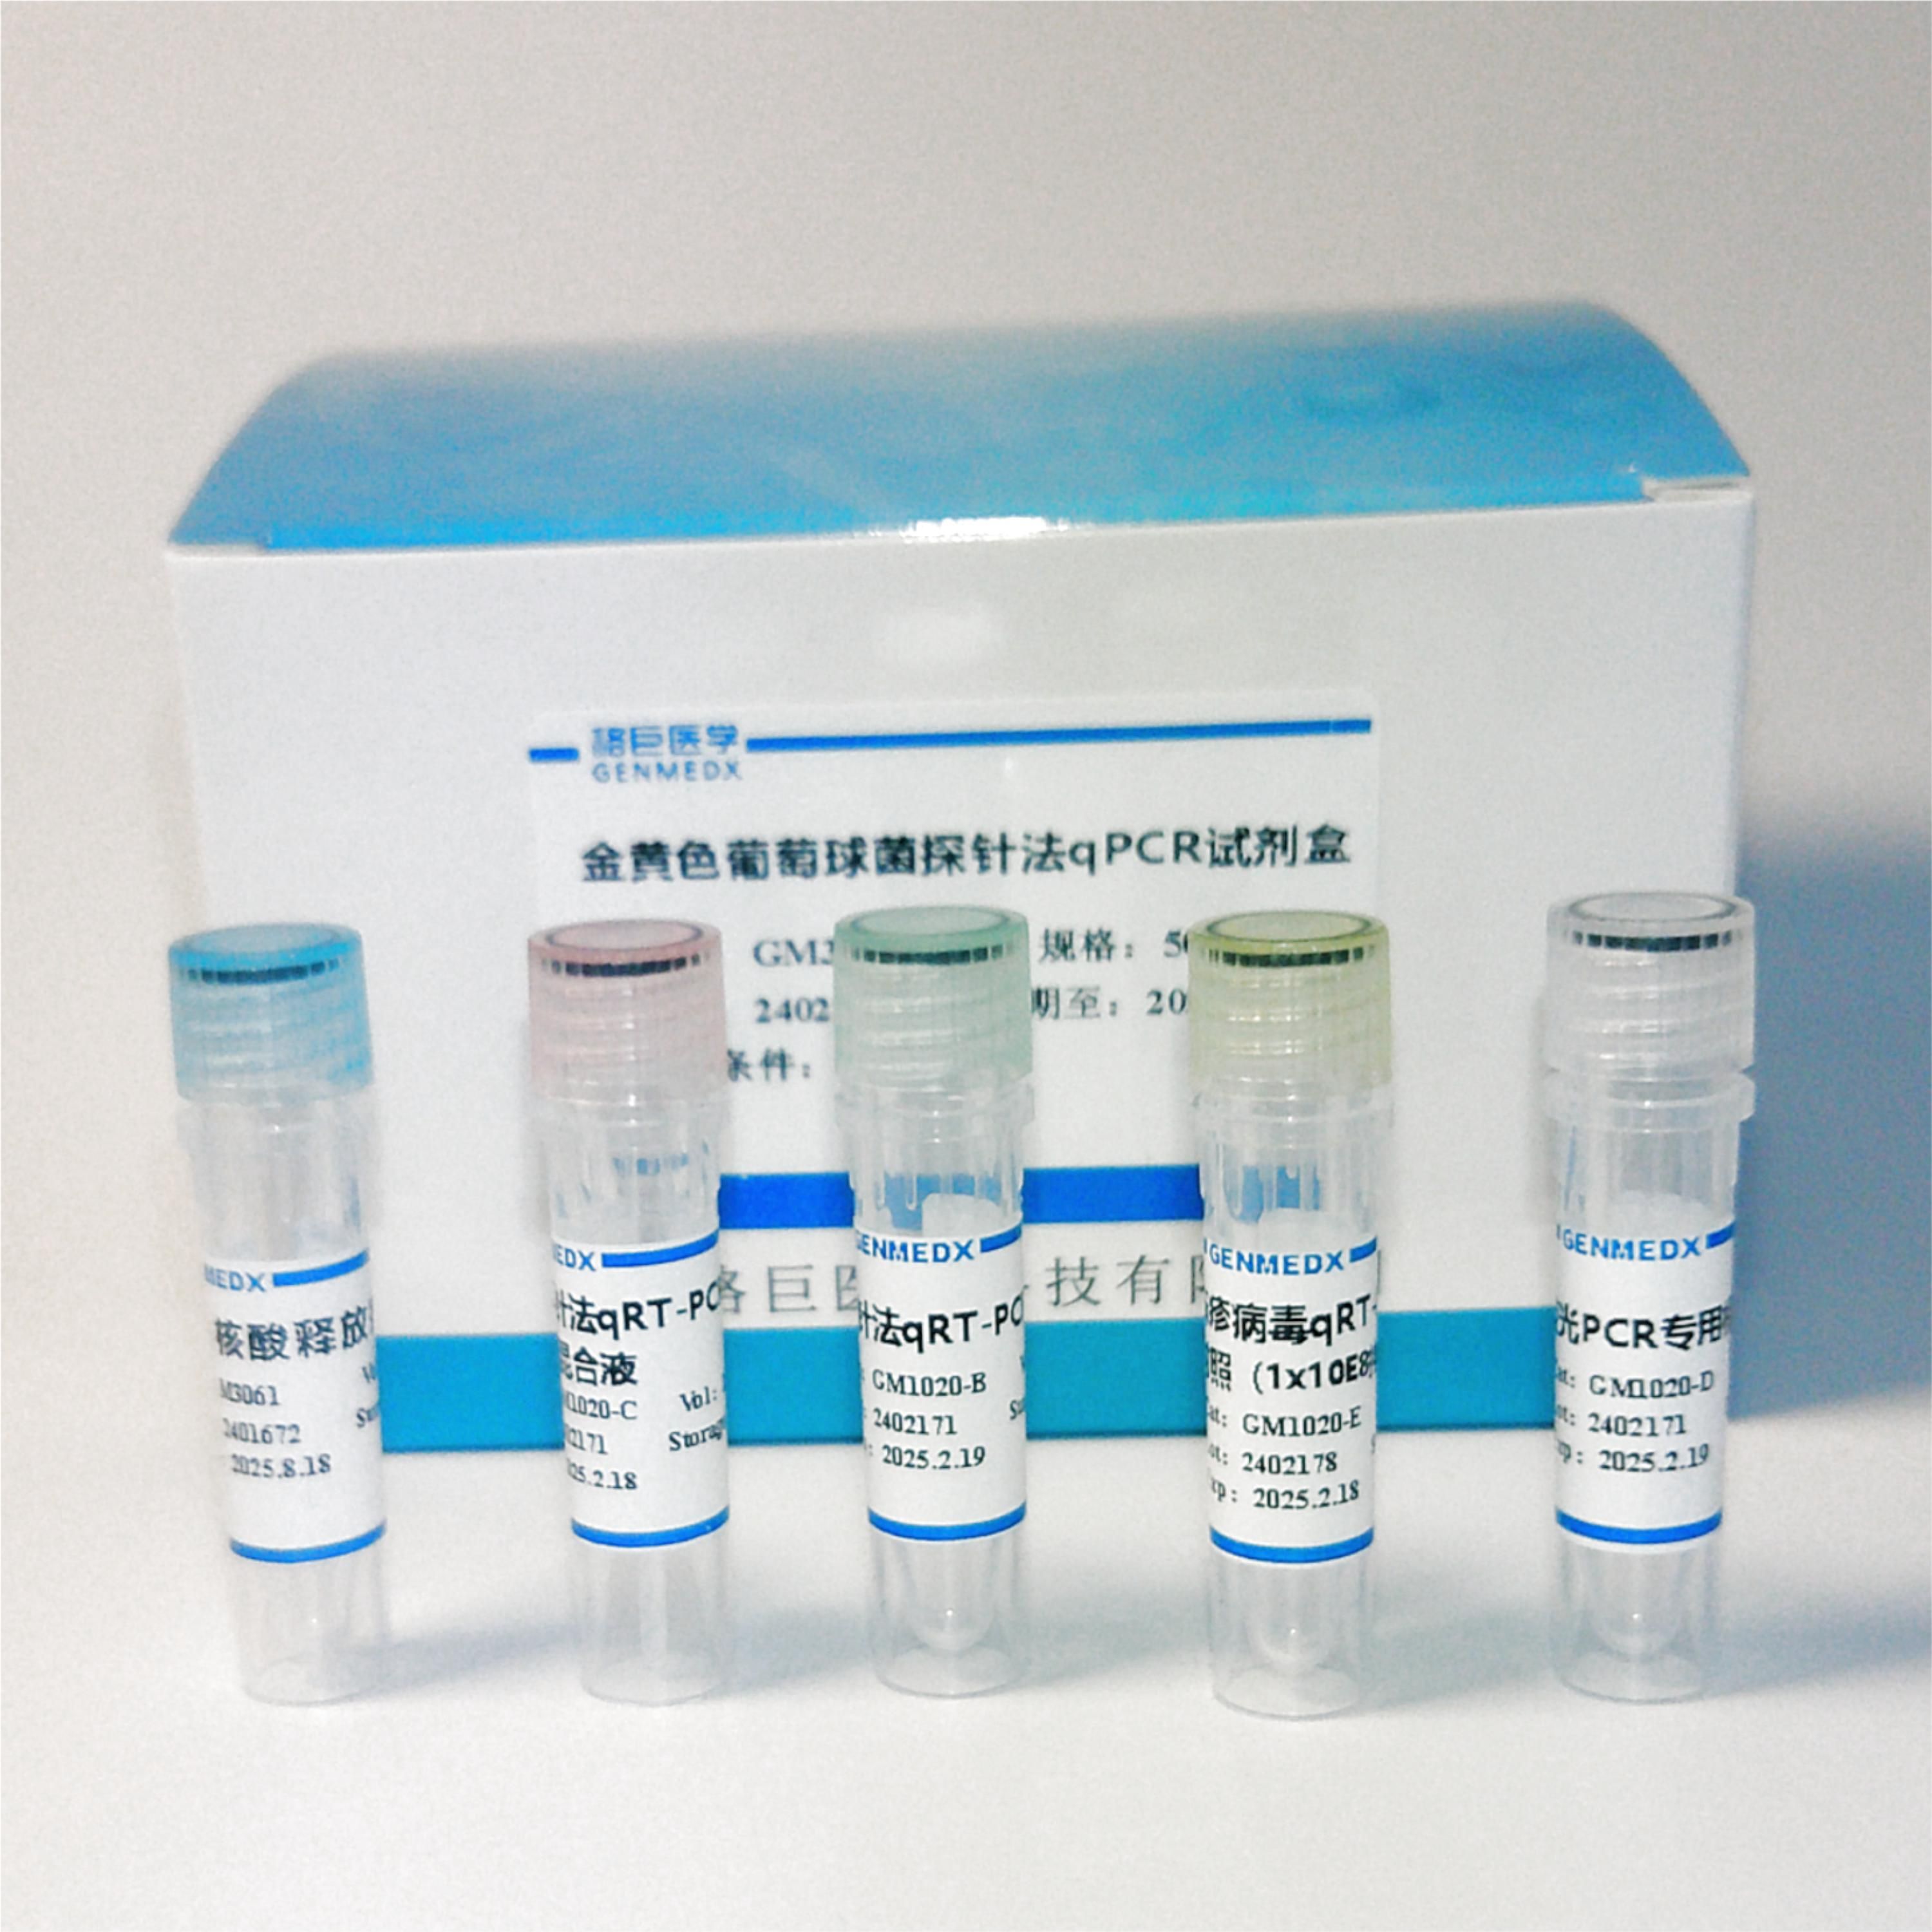 肠出血性大肠杆菌(EHEC) 探针法荧光定量PCR试剂盒